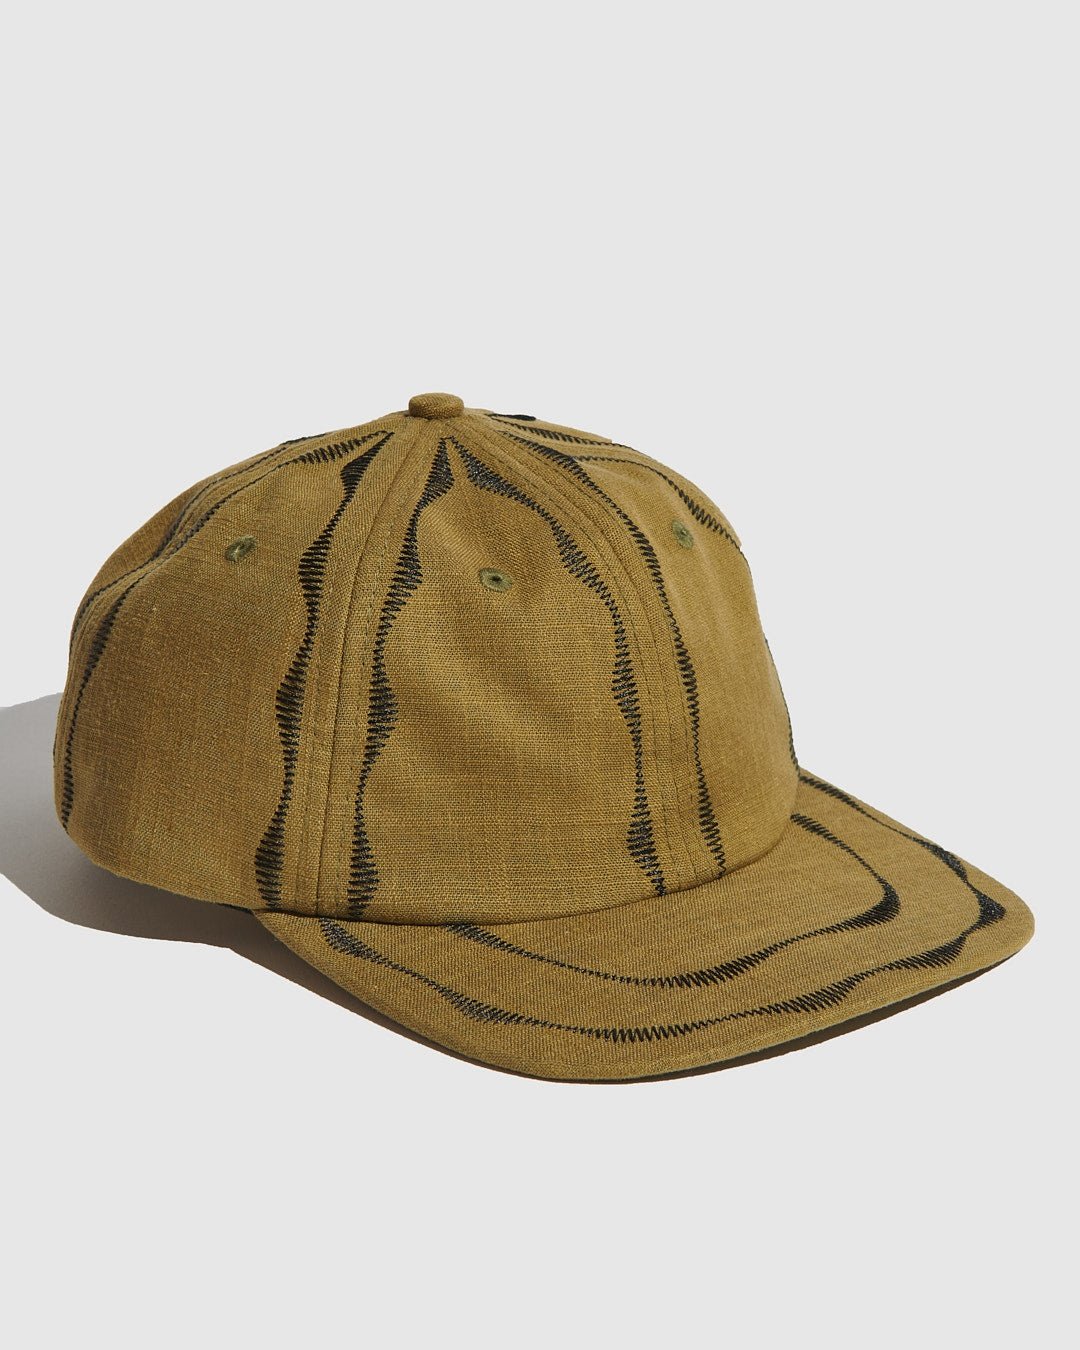 いいスタイル fifth hat Bell souvenir Den store ハット 帽子 